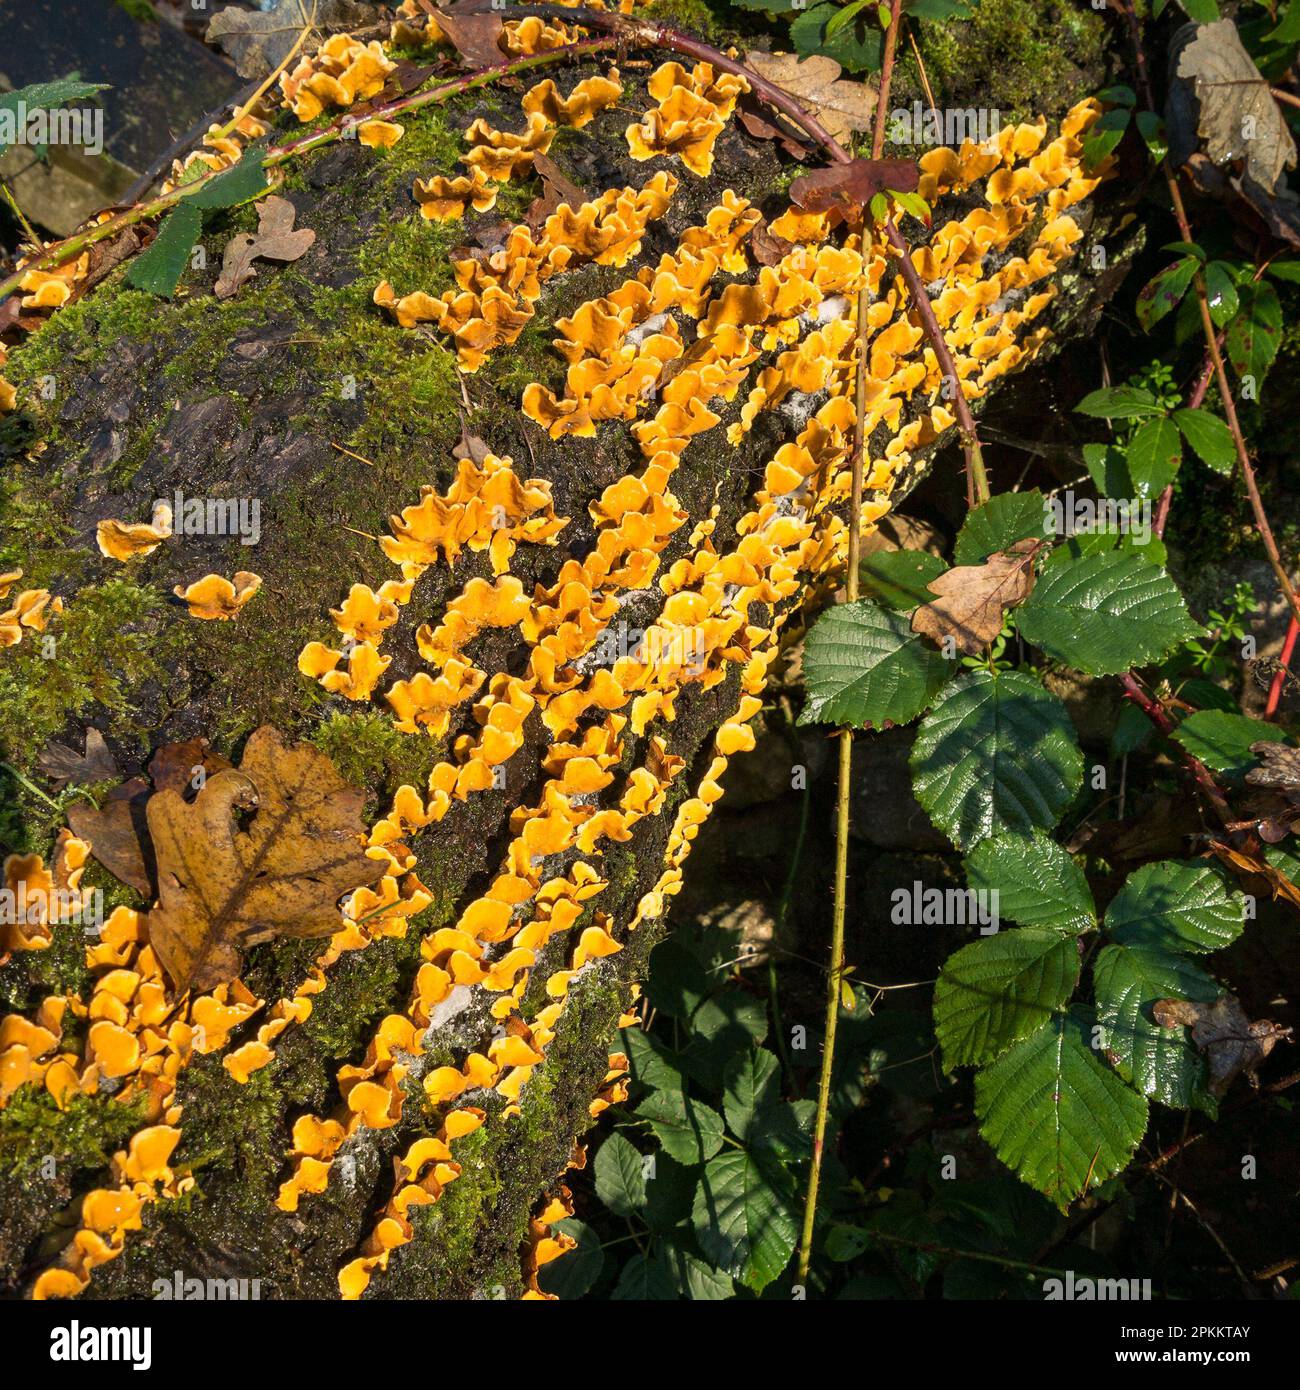 La croûte de rideau de cheveux (Stereum hirsutum) cheveu le champignon croissant sur le tronc d'arbre mort, Cumbria, Angleterre, Royaume-Uni Banque D'Images